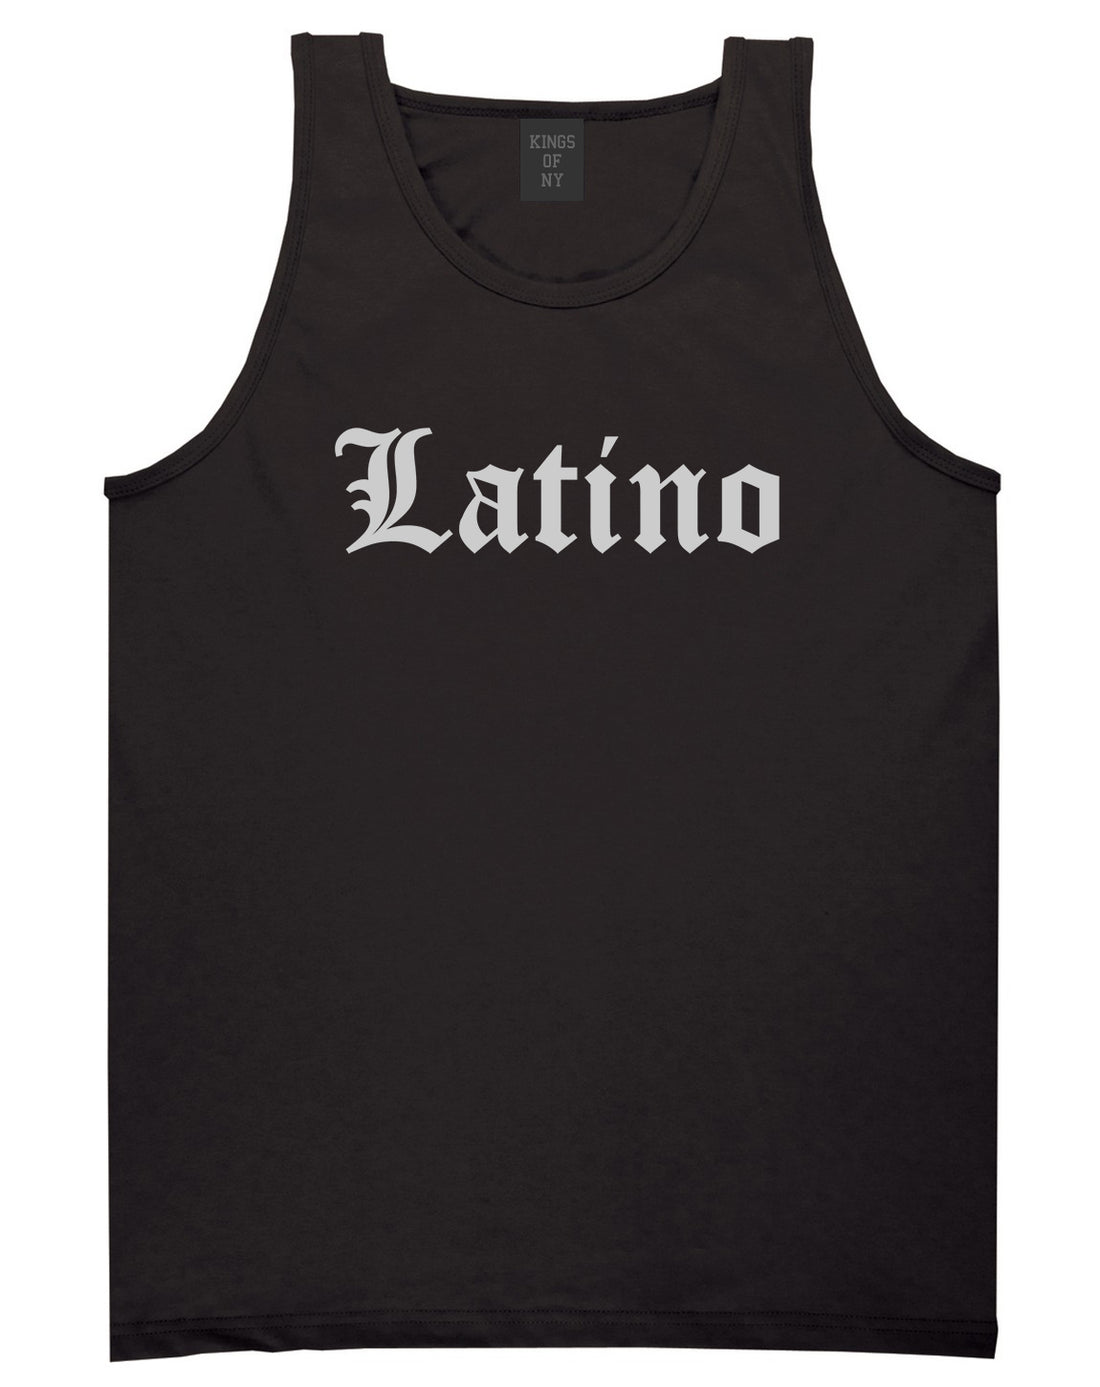 Latino Old English Spanish Mens Tank Top Shirt Black by Kings Of NY